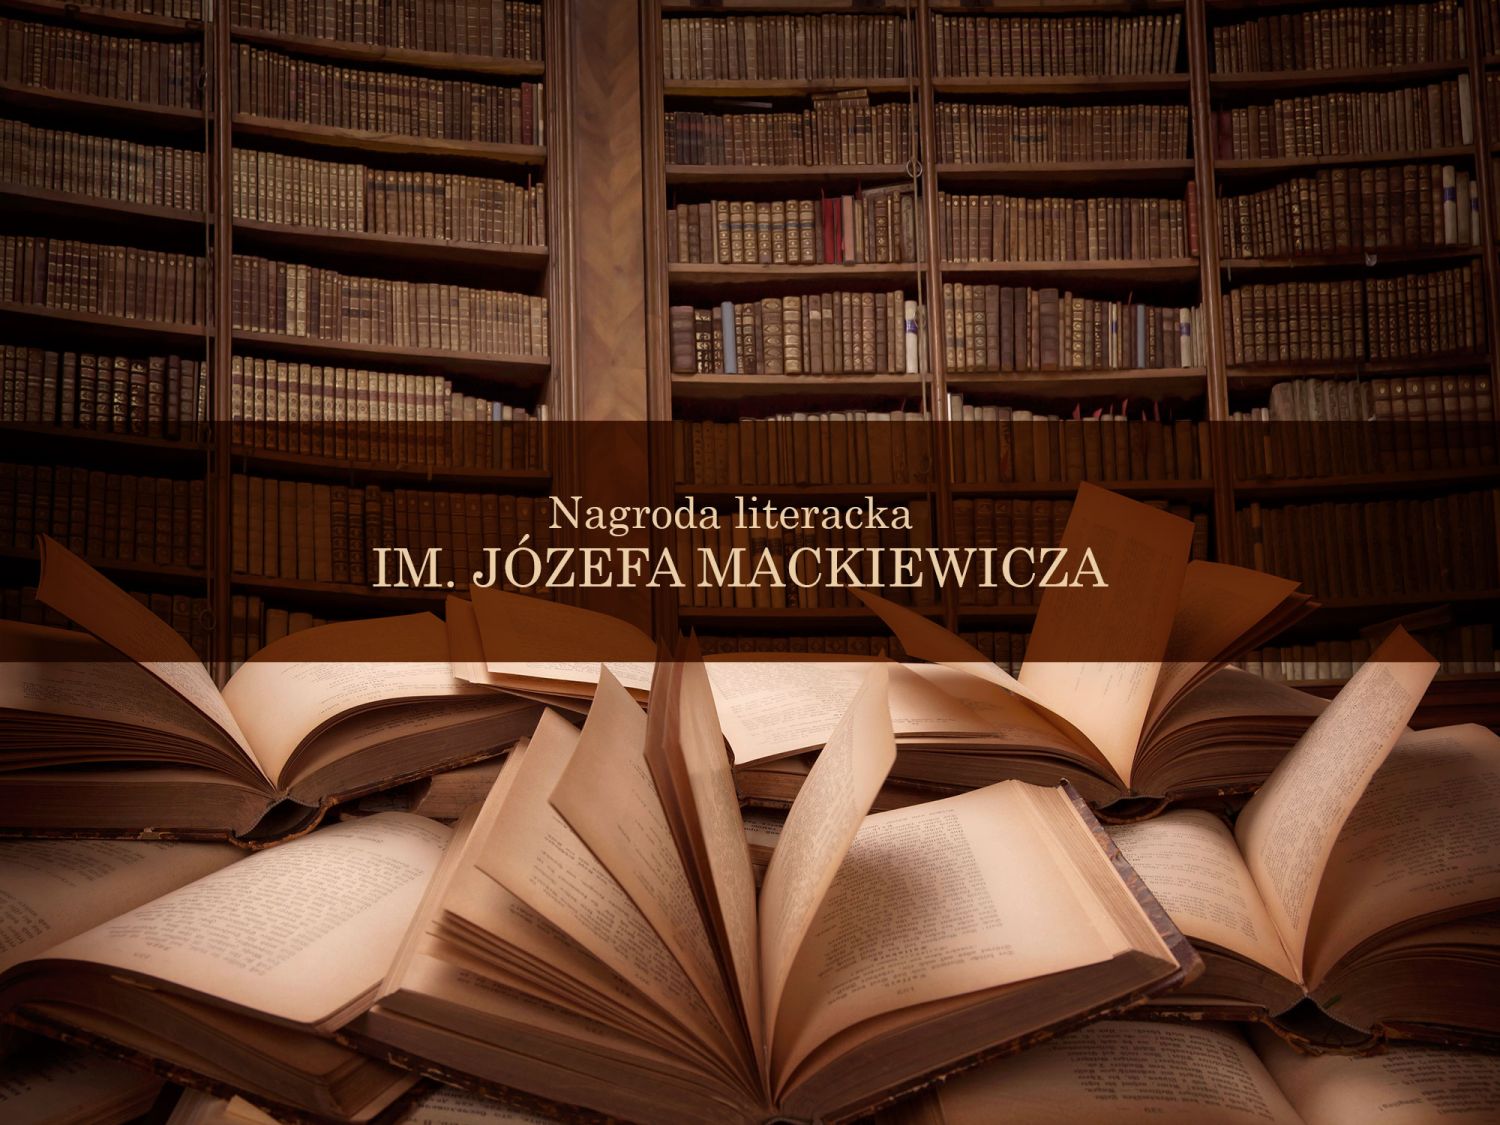 Nagroda Literacka im. Józefa Mackiewicza. Co warto wiedzieć na jej temat?